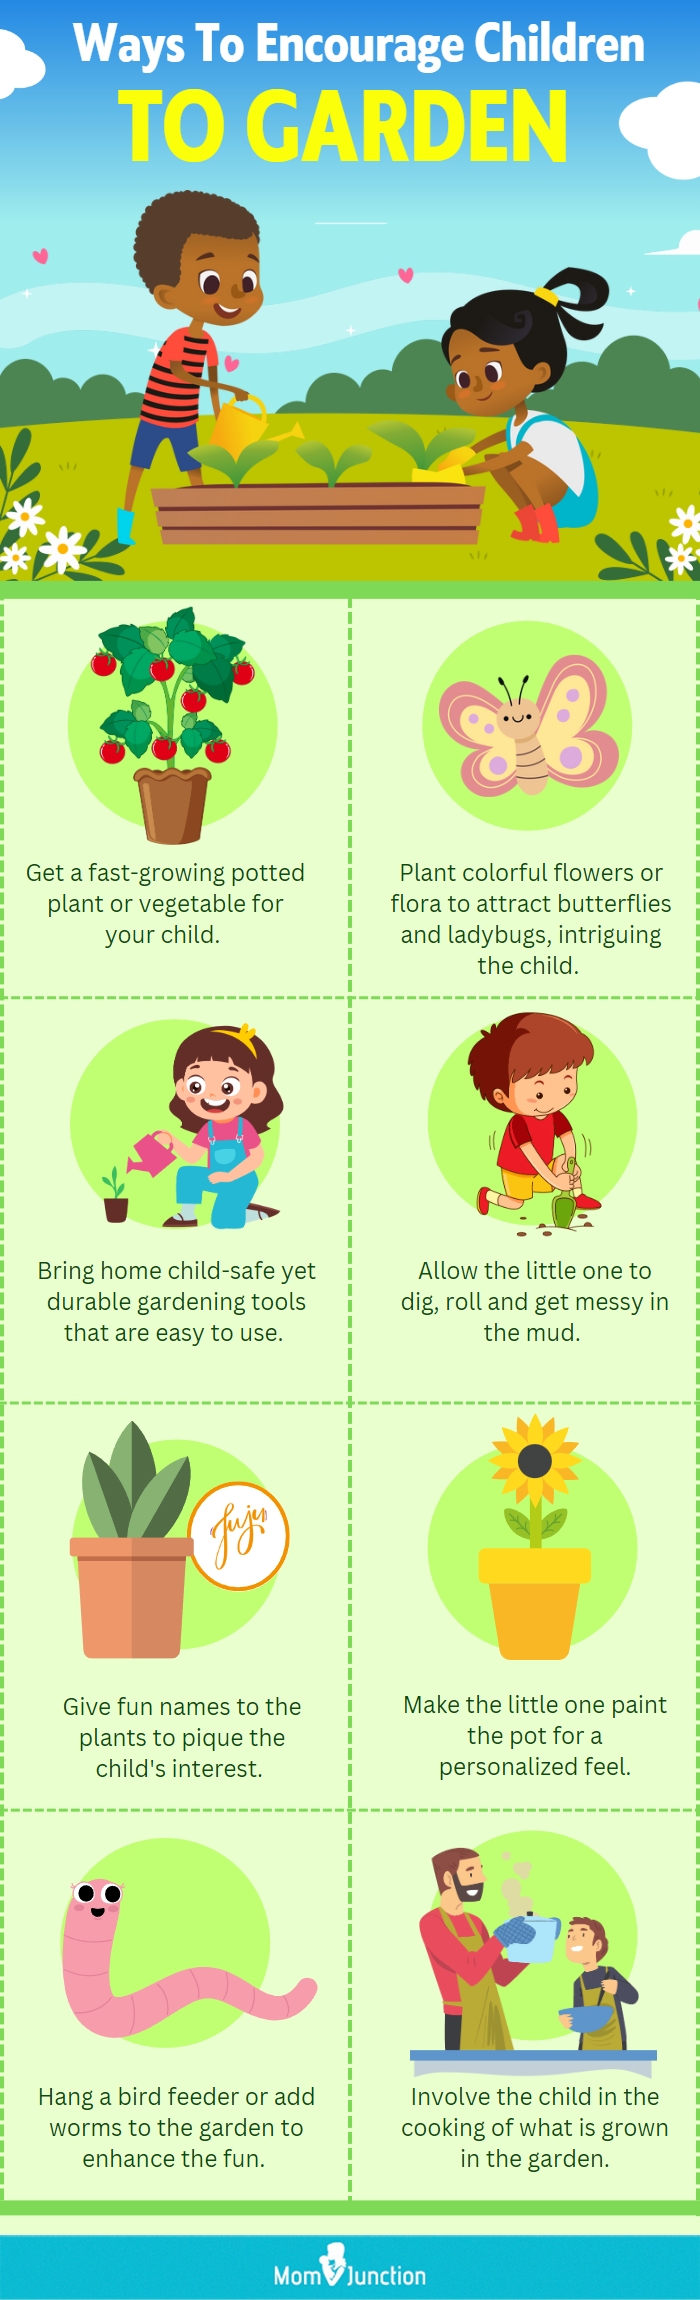 Ways To Encourage Children To Garden (infographic)